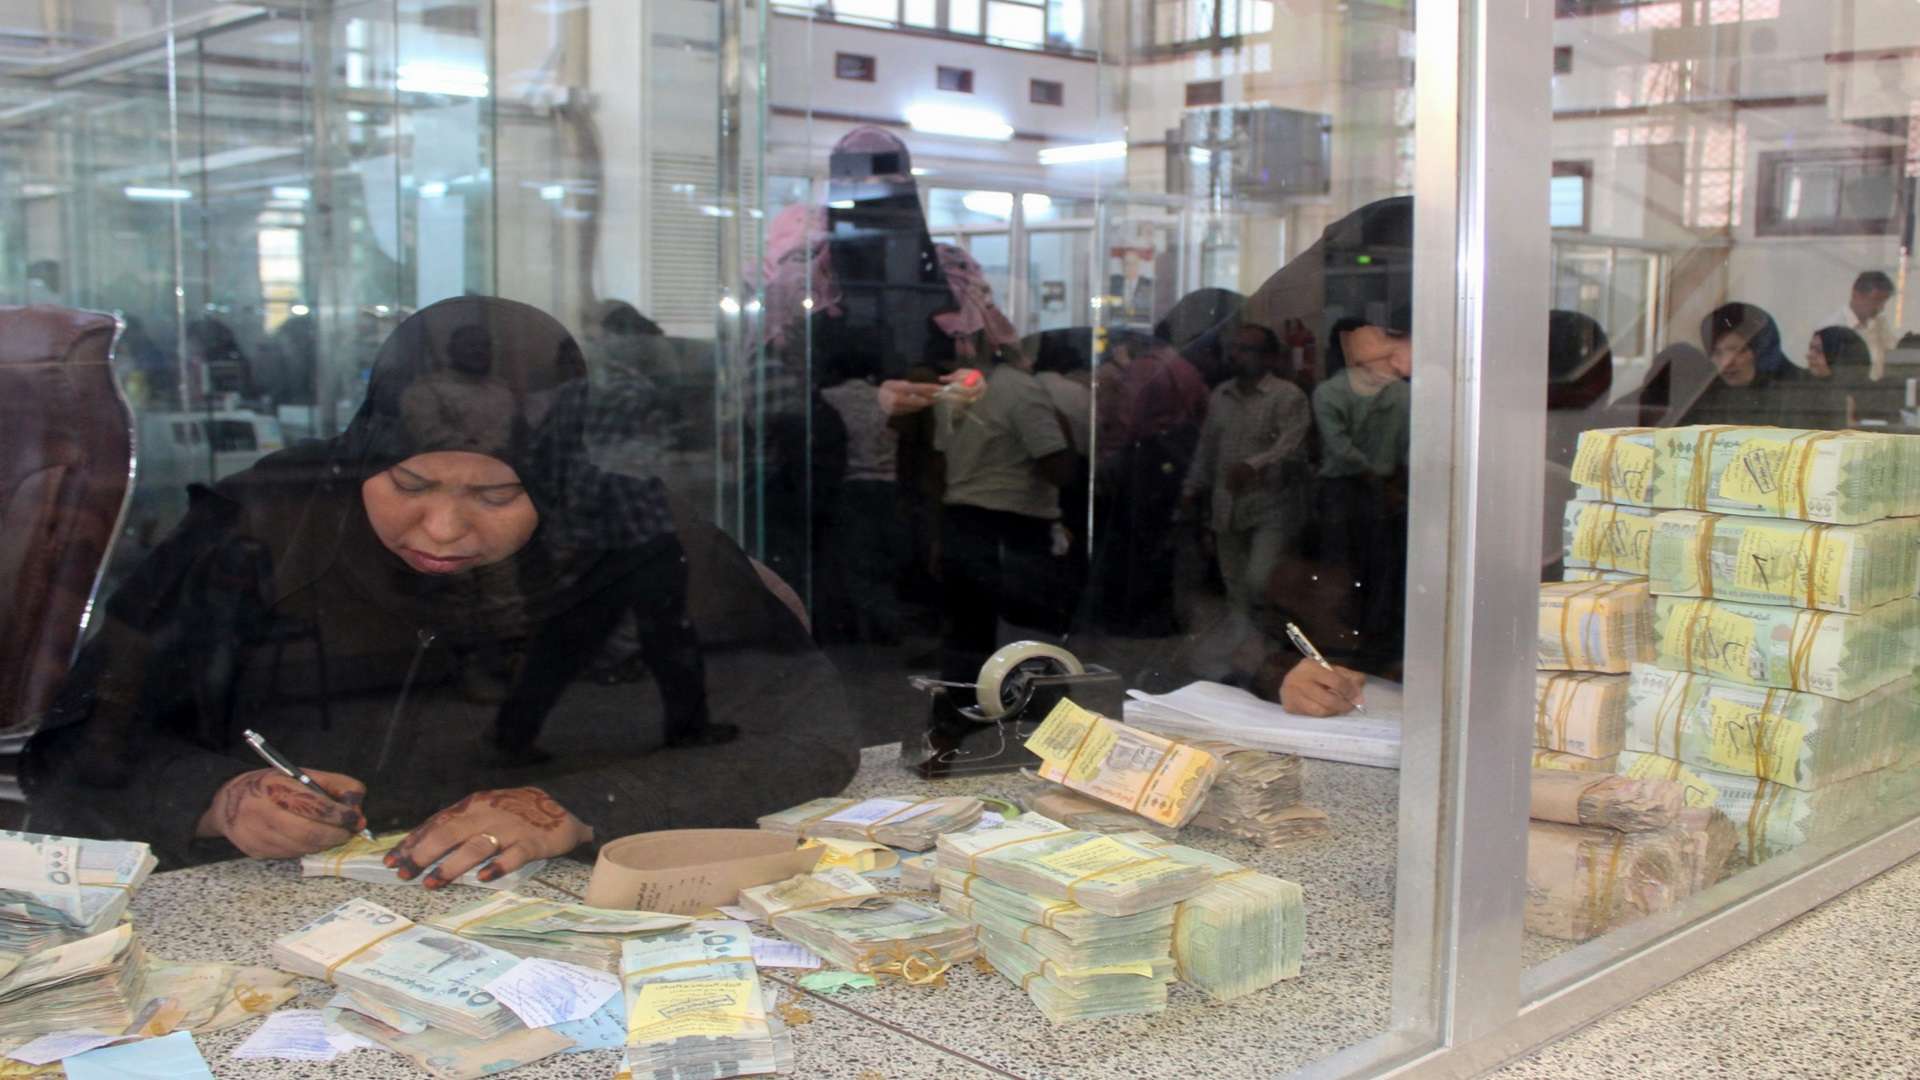 الريال اليمني يعاود الانهيار امام العملات الأجنبية